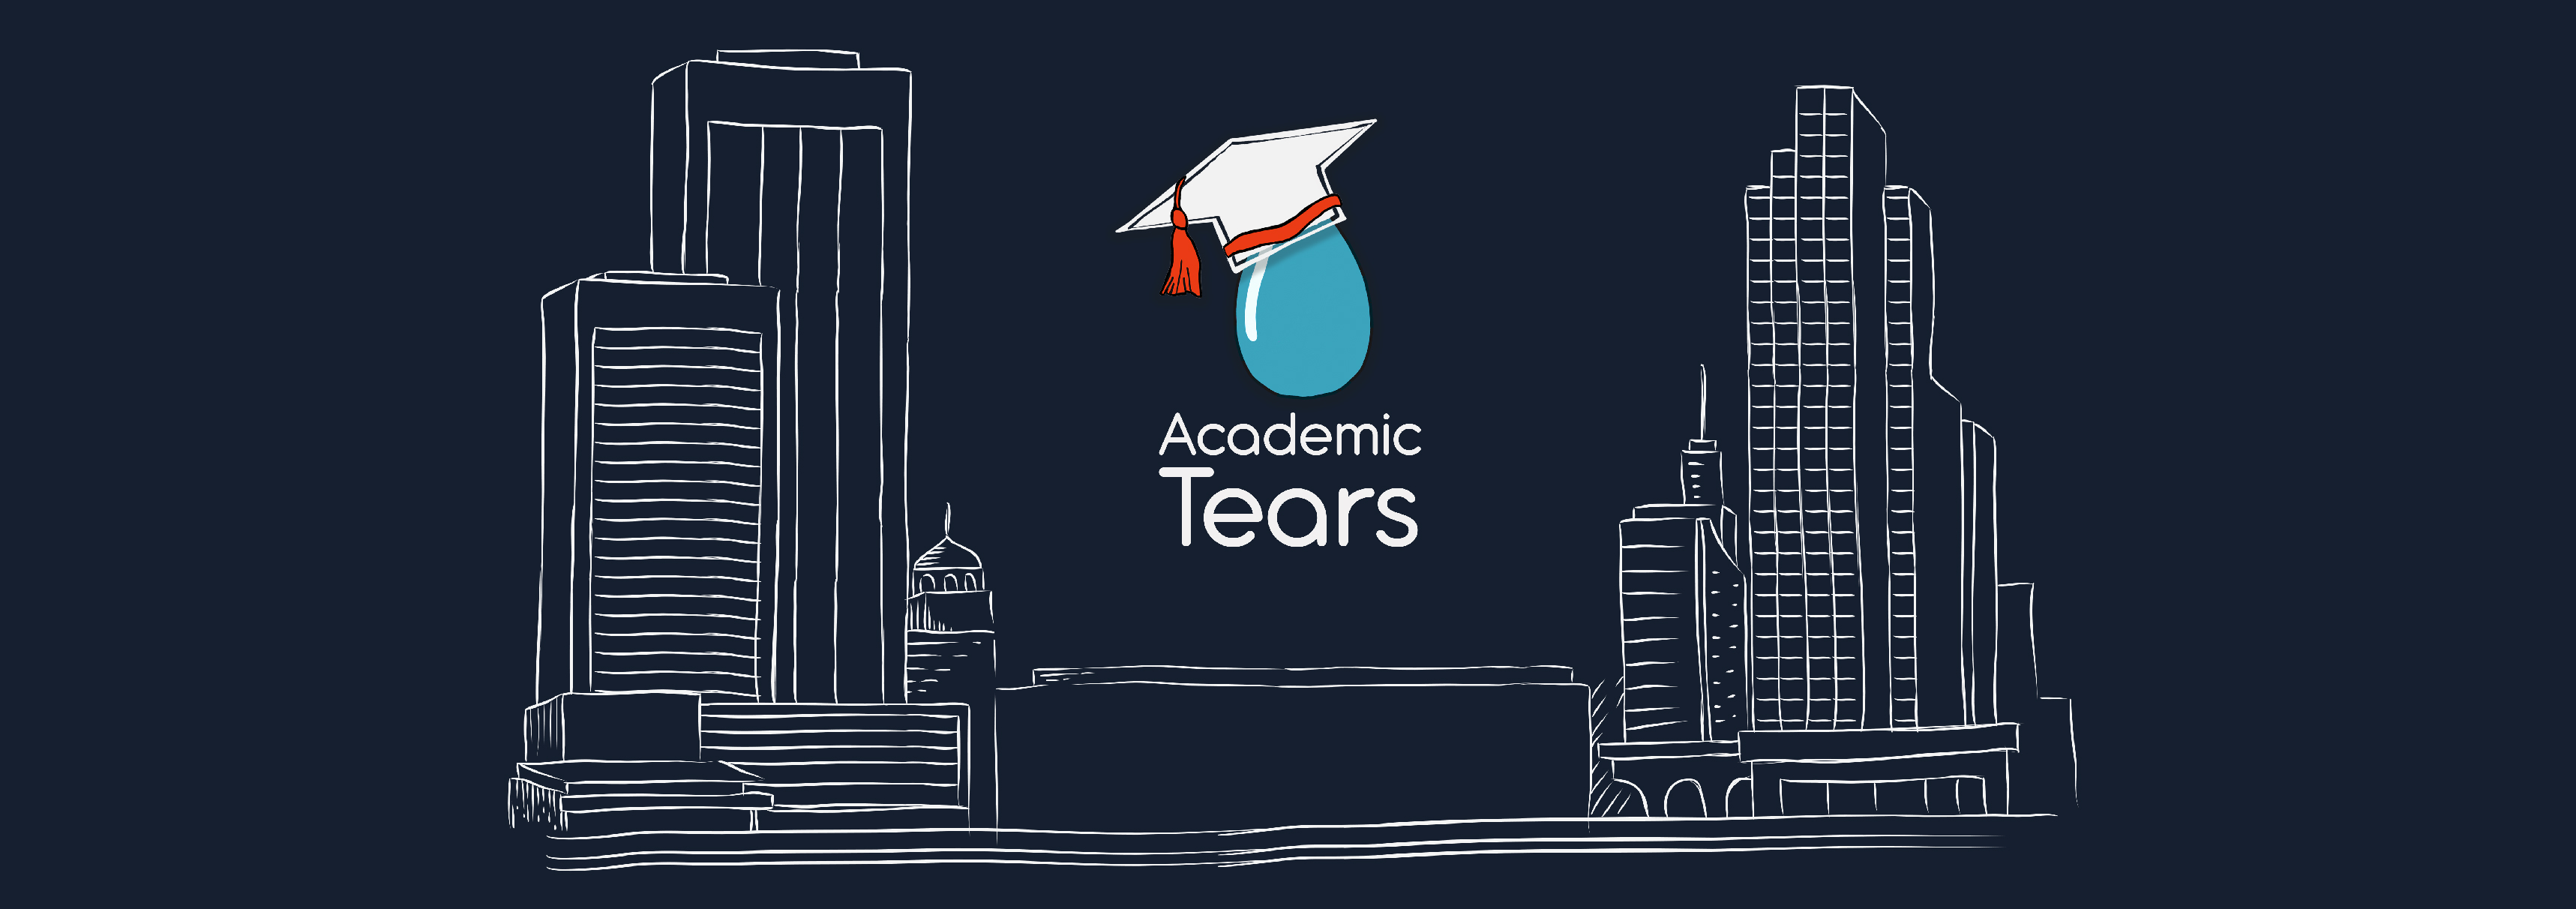 Academic Tears